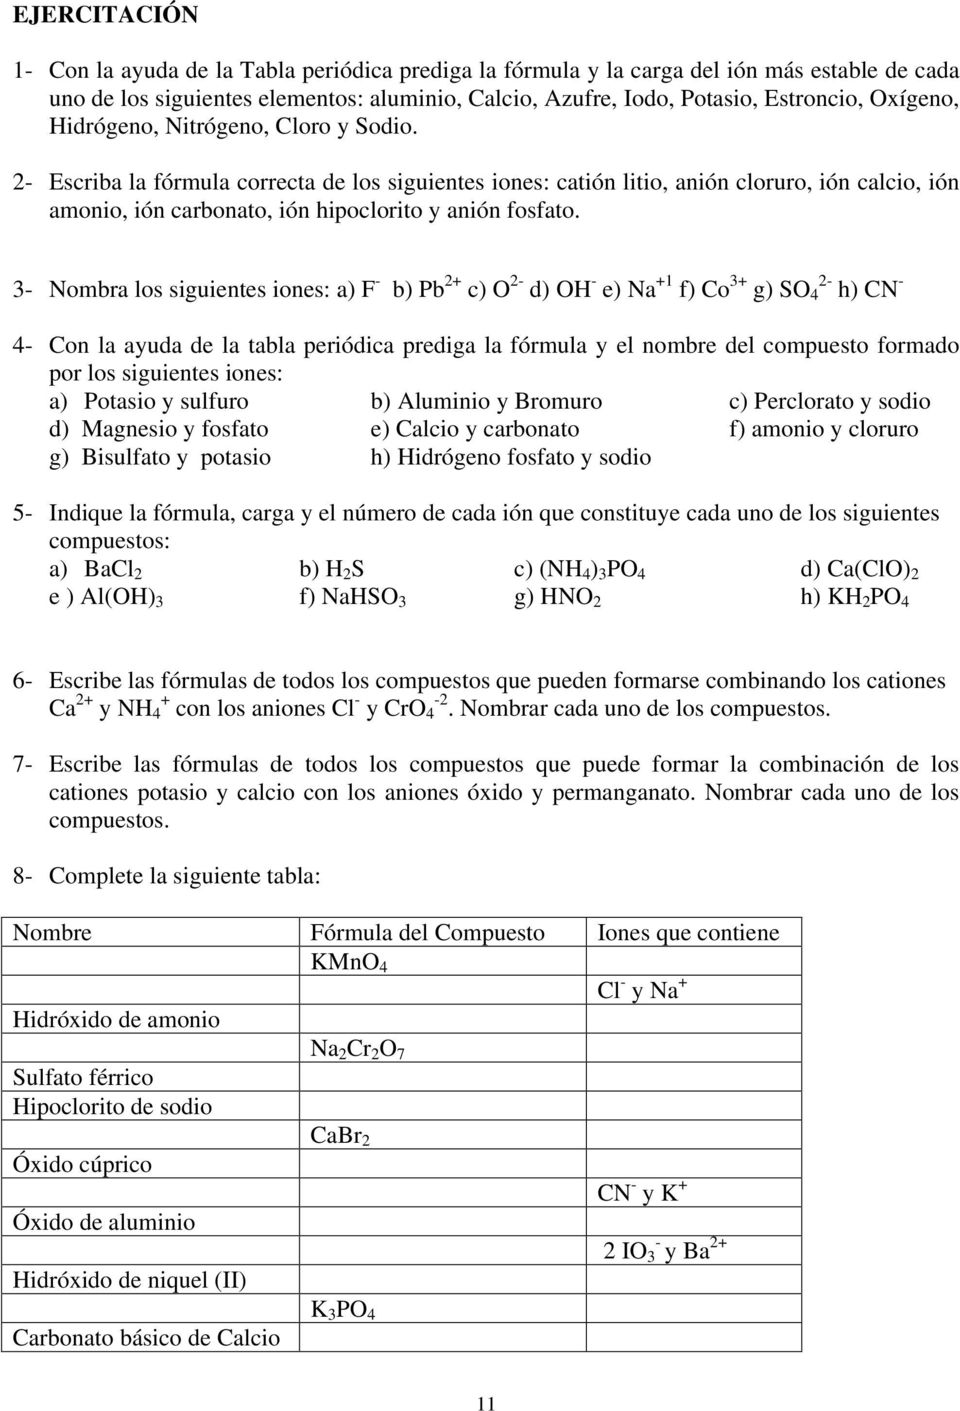 2 Escriba la fórmula correcta de los siguientes iones: catión litio, anión cloruro, ión calcio, ión amonio, ión carbonato, ión hipoclorito y anión fosfato.